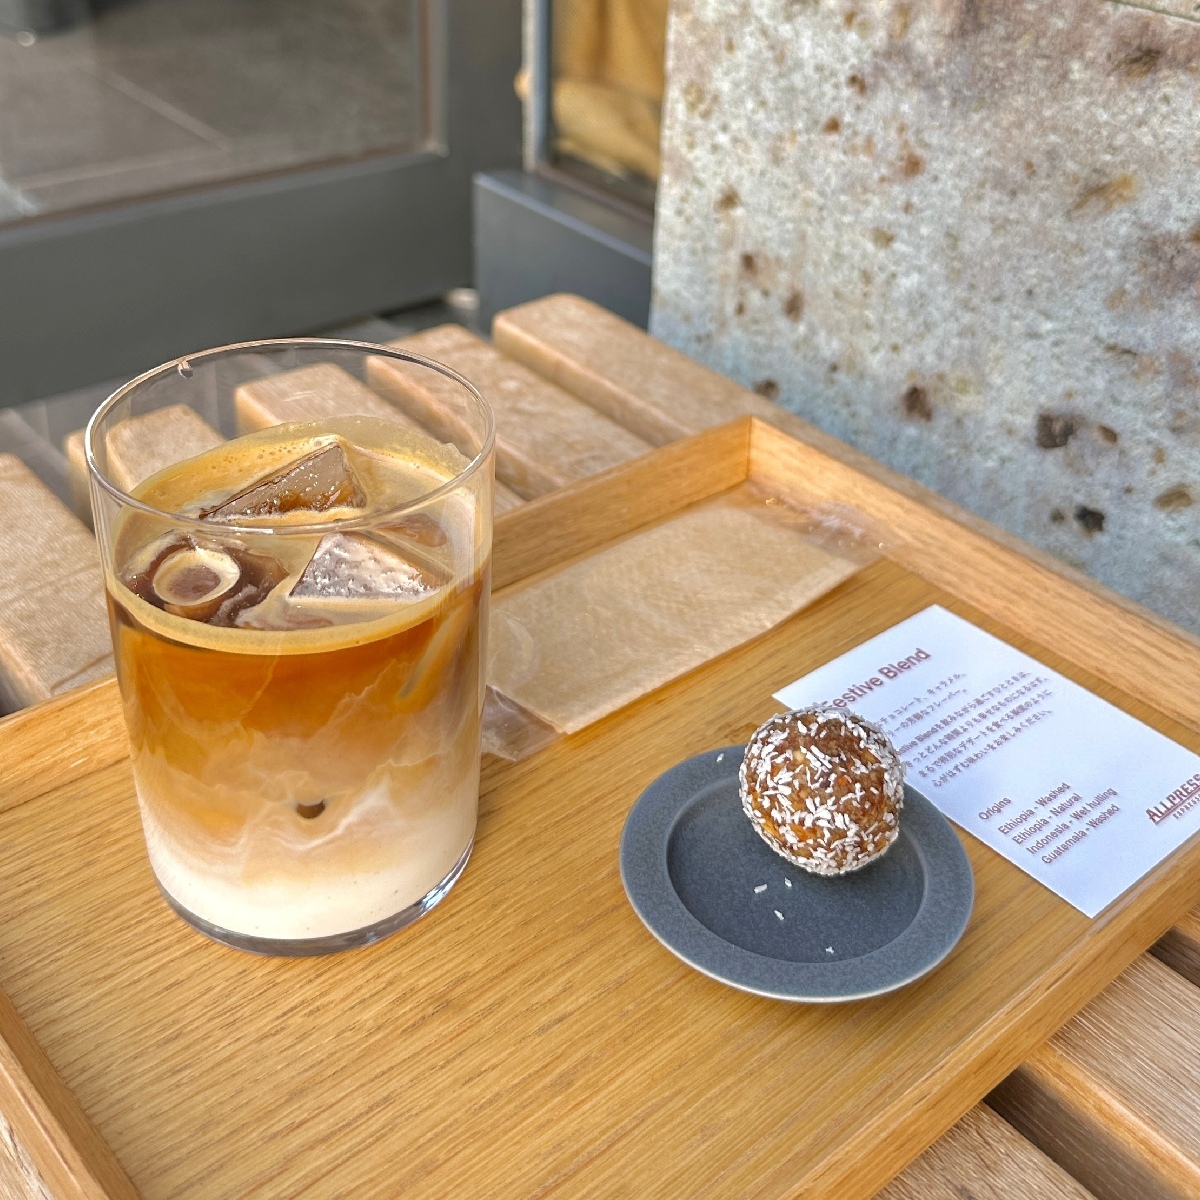 【清澄白河】NZ発祥のおすすめカフェ「オールプレス エスプレッソ 東京ロースタリー&カフェ」